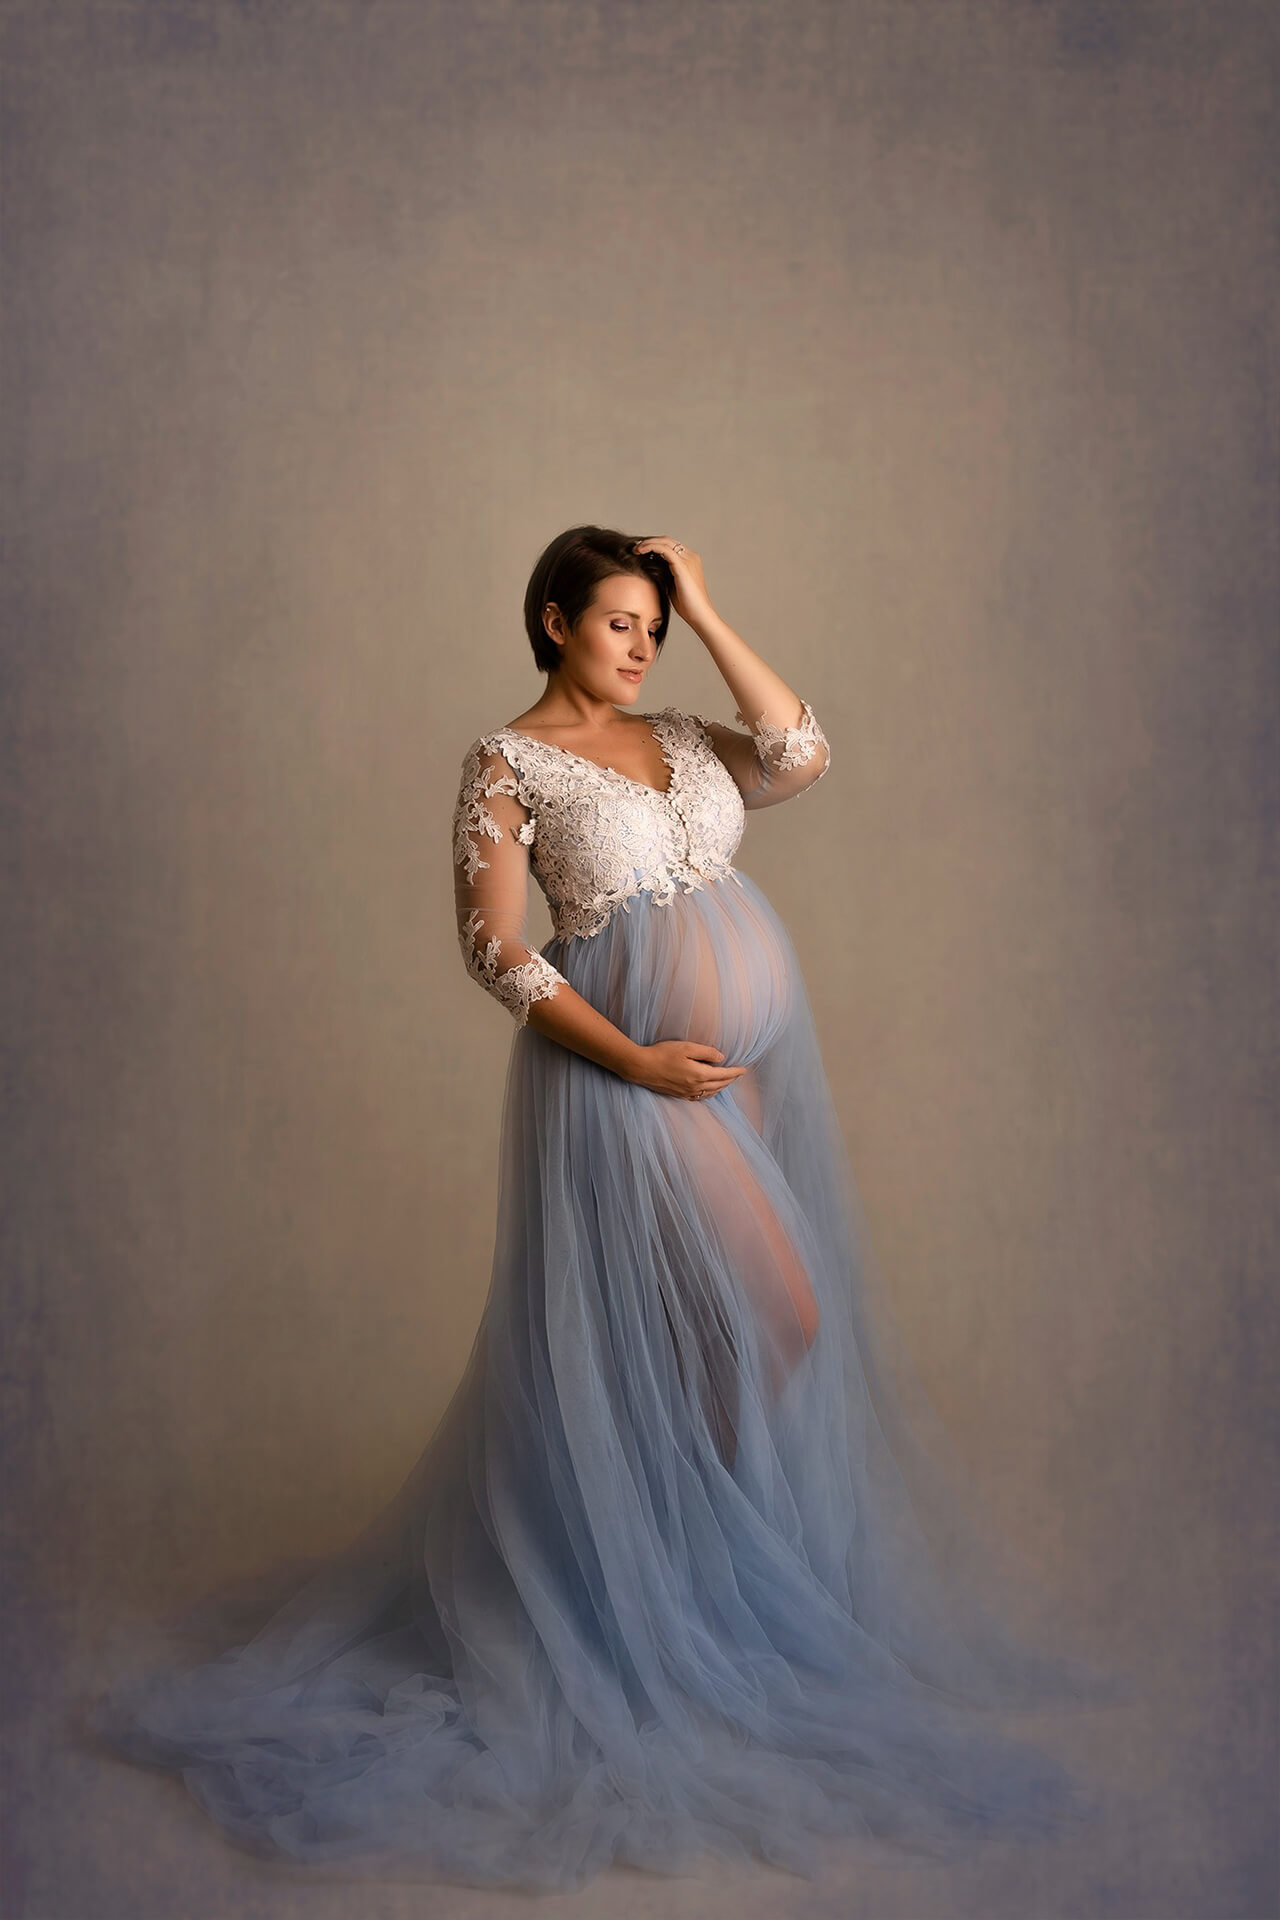 Une femme enceinte vêtue d'une robe en tulle bleu posant pour une photo.